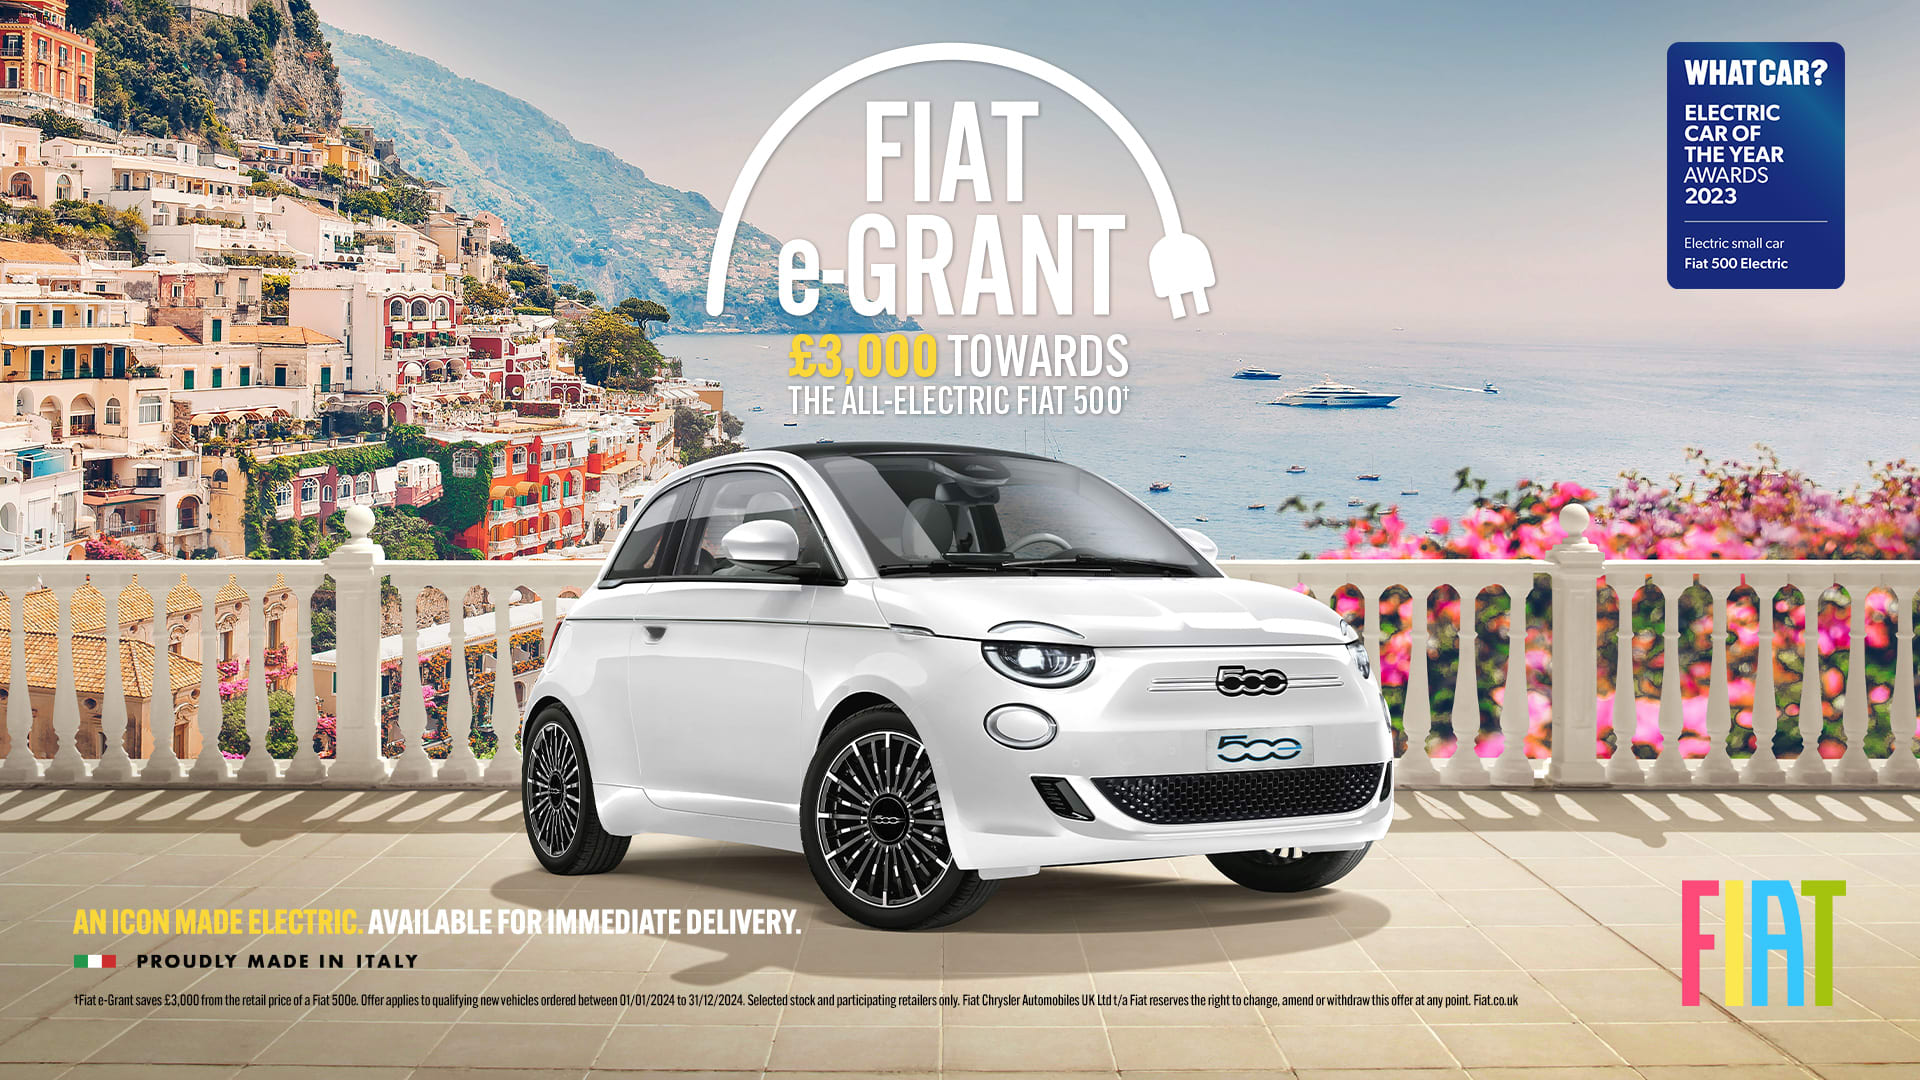 Fiat e-Grant